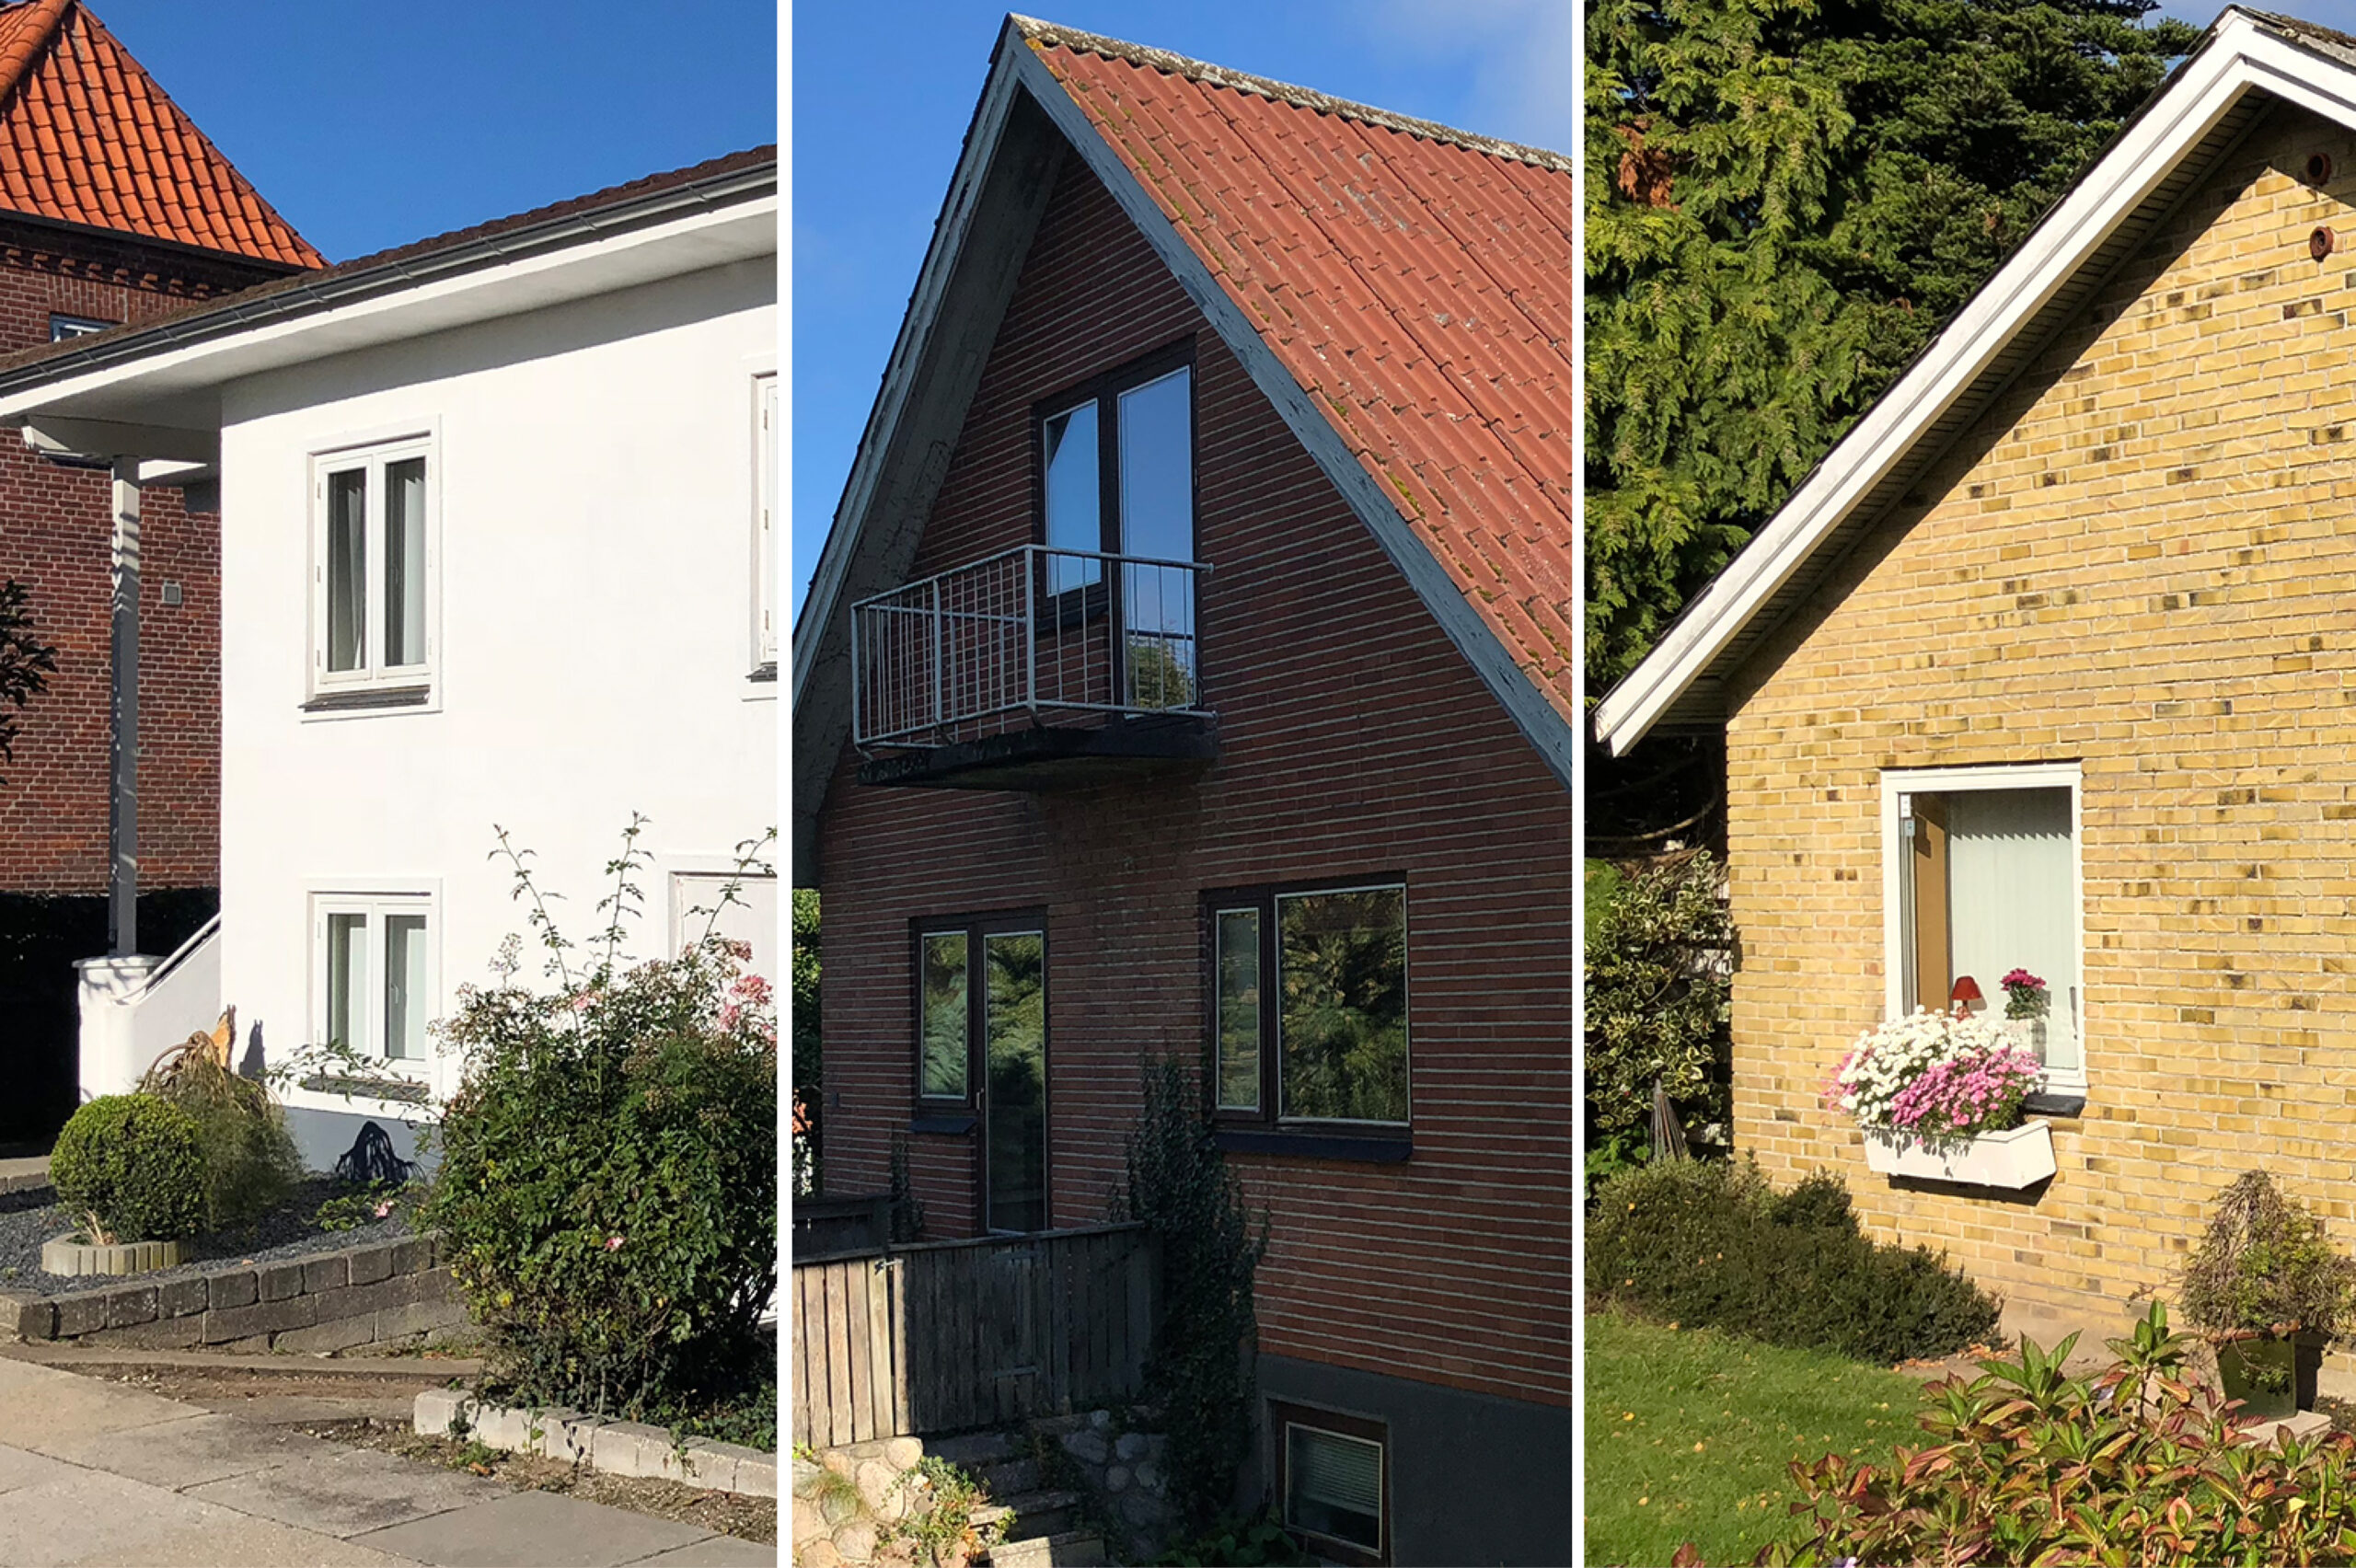 3 boliger fra projektet Sunde Boliger Renovering / Artelia / Rådgivende Ingeniører